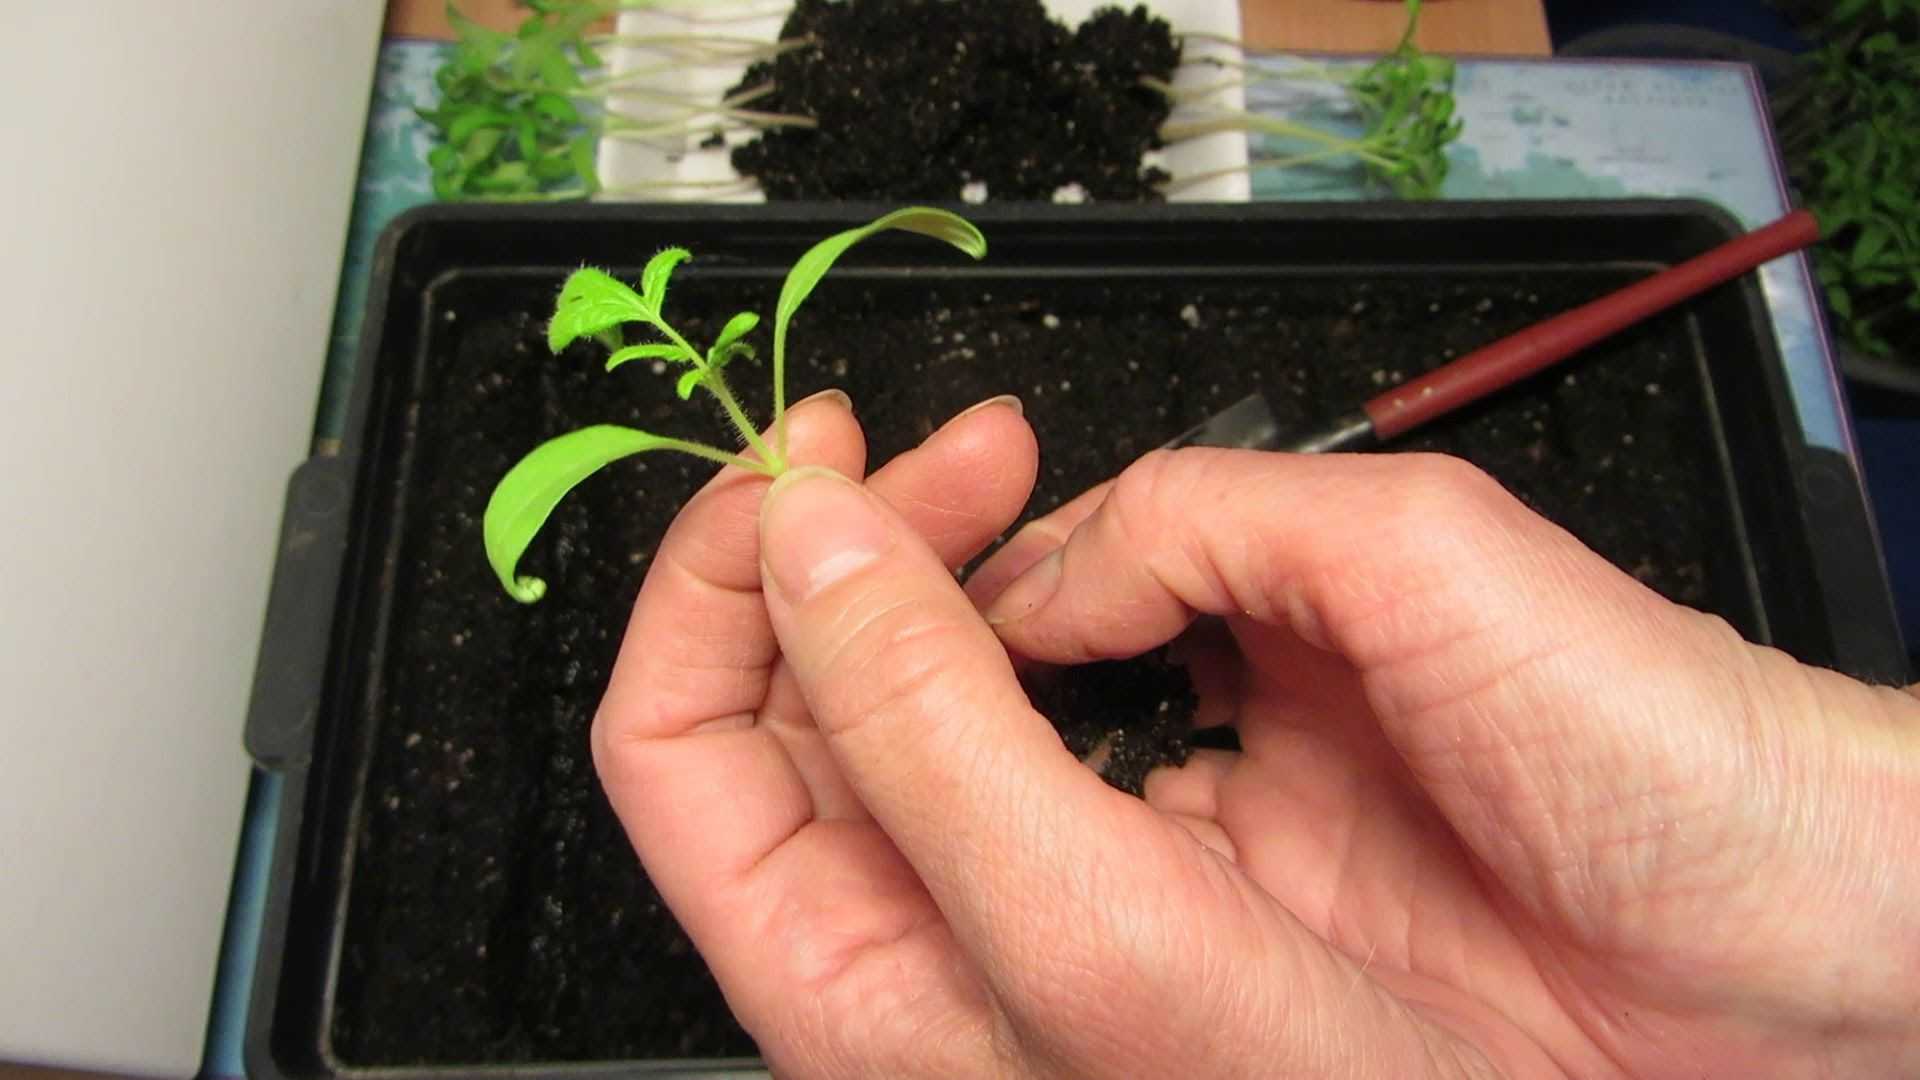 Пикировка томатов: когда и как правильно пикировать рассаду помидоров | топ огород